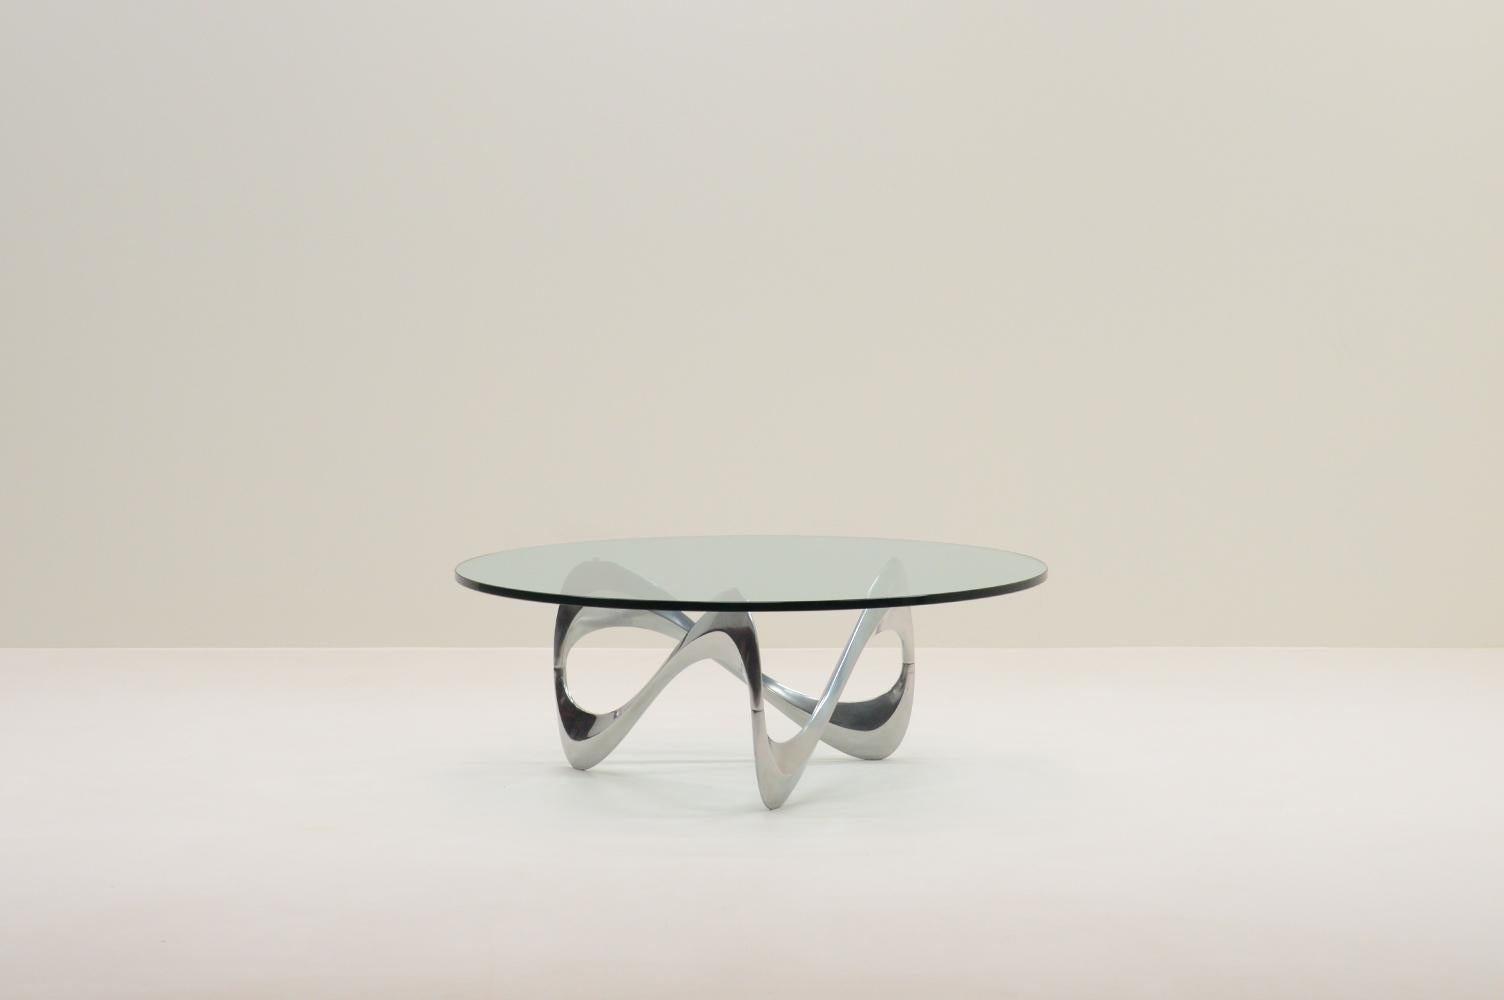 Table basse en forme de serpent par Knut Hesterberg pour Ronald Schmitt, 1960, Allemagne. La base sculpturale de la table est en aluminium poli avec un plateau en verre épais. Knut Hesterberg était connu pour son approche minimaliste et